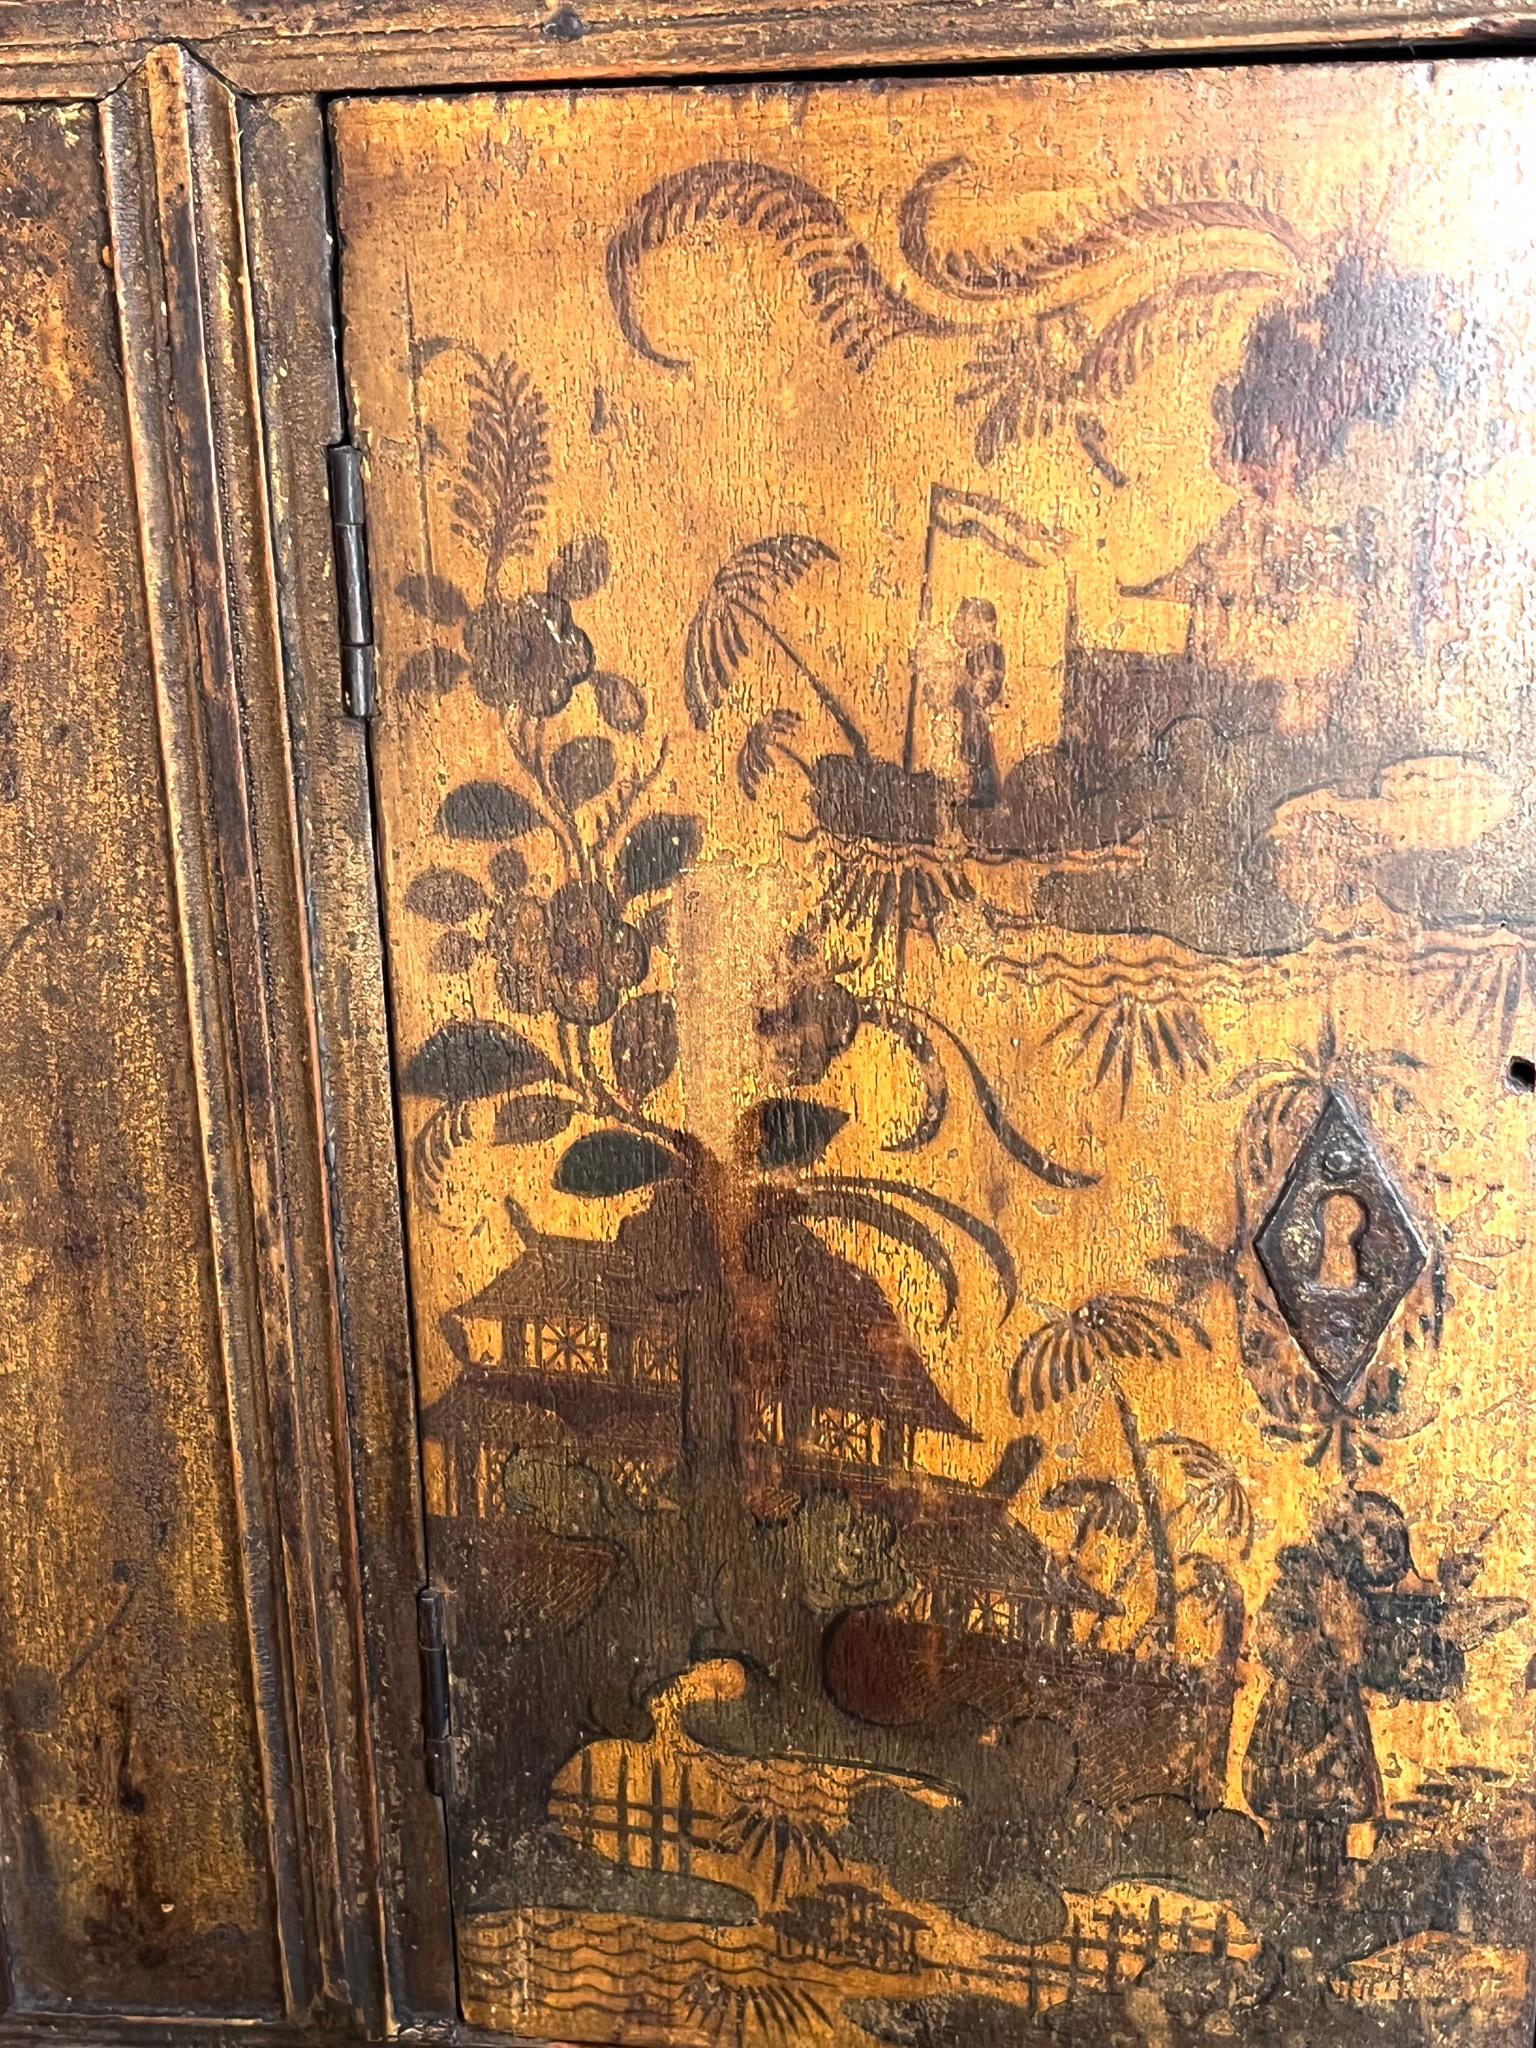 Étagère française (région d'Aix en Provence) du XVIIIe siècle, décor chinois sur fond jaune.
Deux portes courbes. Etat d'origine, pas de restauration.
Un design élégant et raffiné.